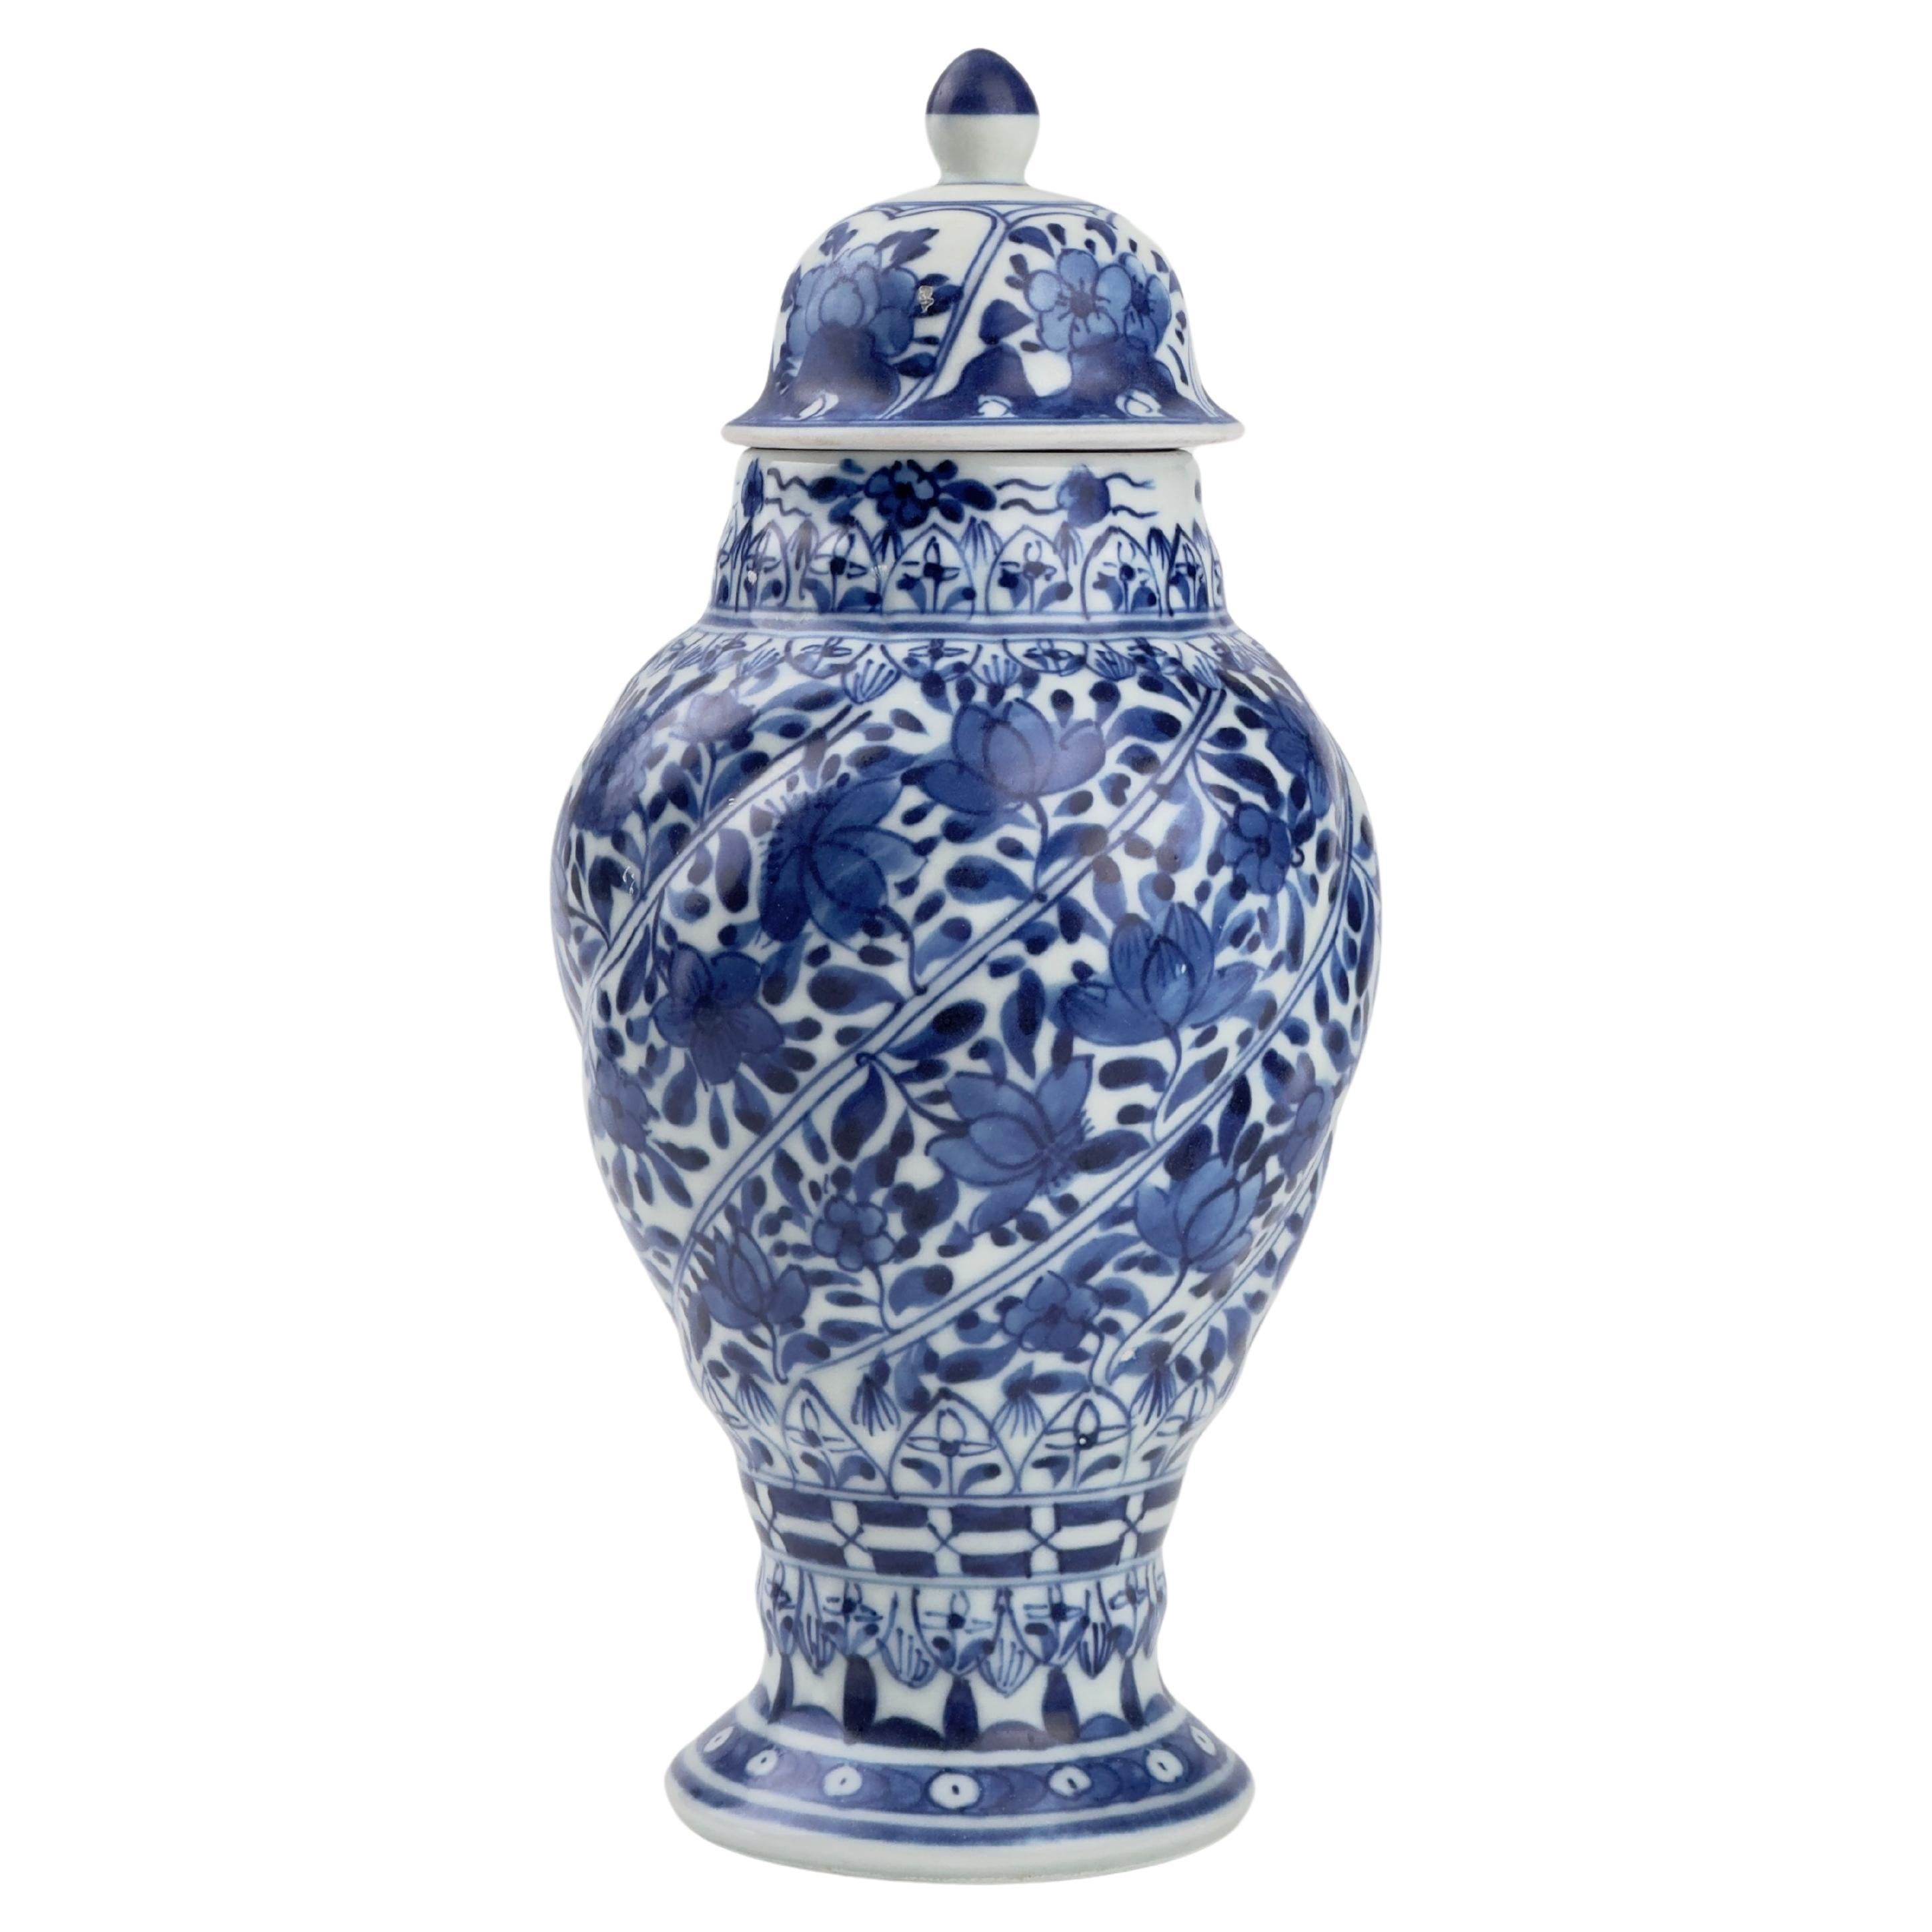 Blue And White Spiral Vase, Qing Dynasty, Kangxi Era, Circa 1690